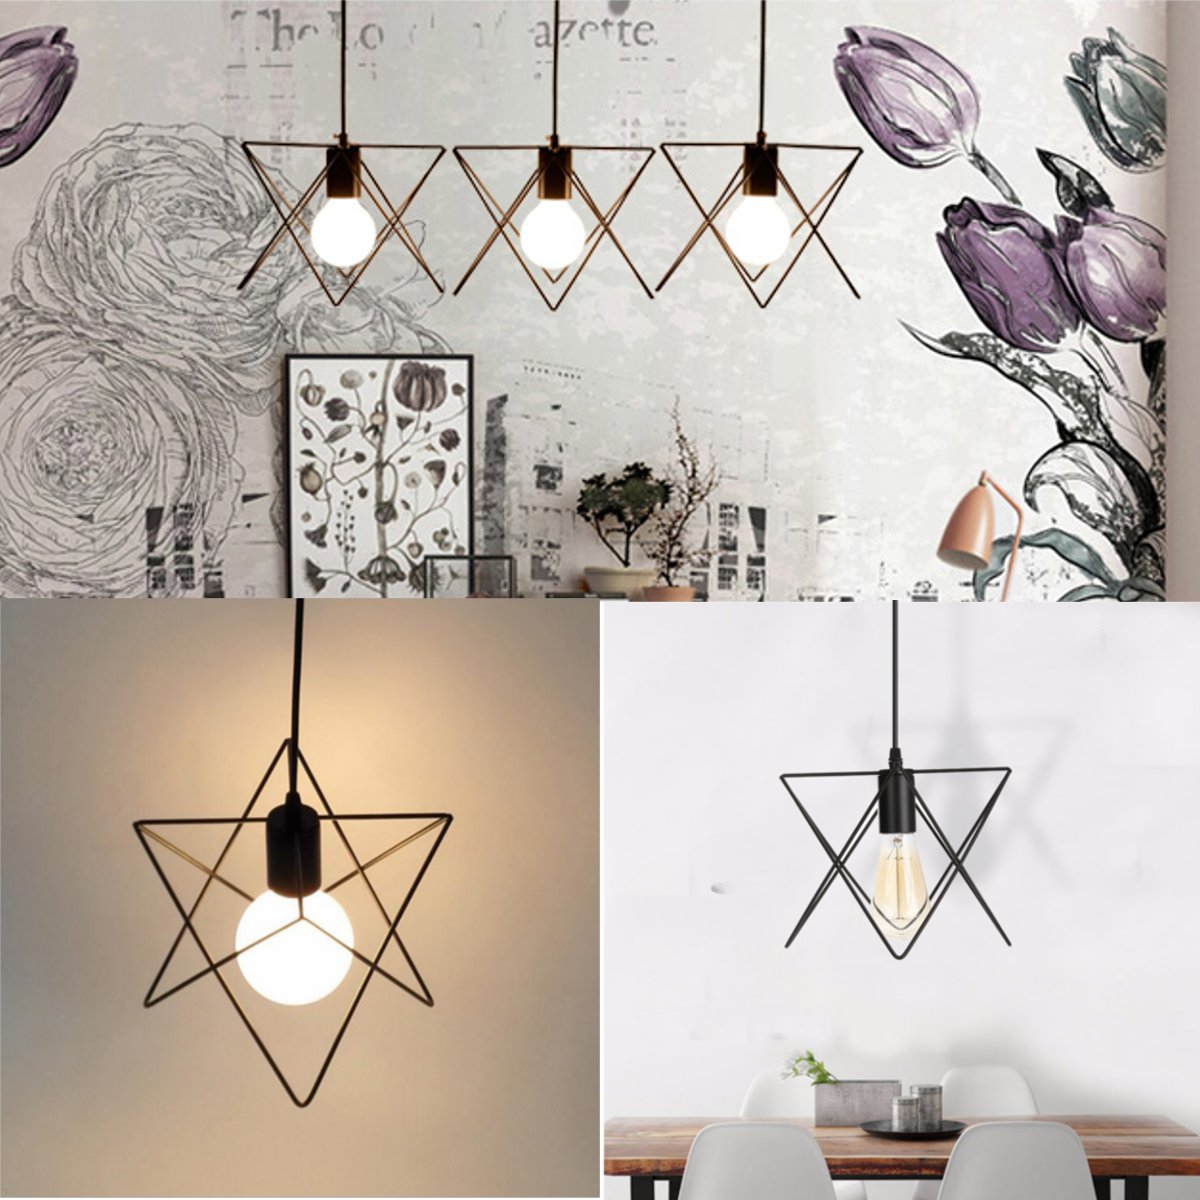 3-In-1-Metal-Vintage-Ceiling-Light-Pendant-Lamp-Cage-Lampshade-Fixture-Chandelier-Indoor-Lighting-1118747-1